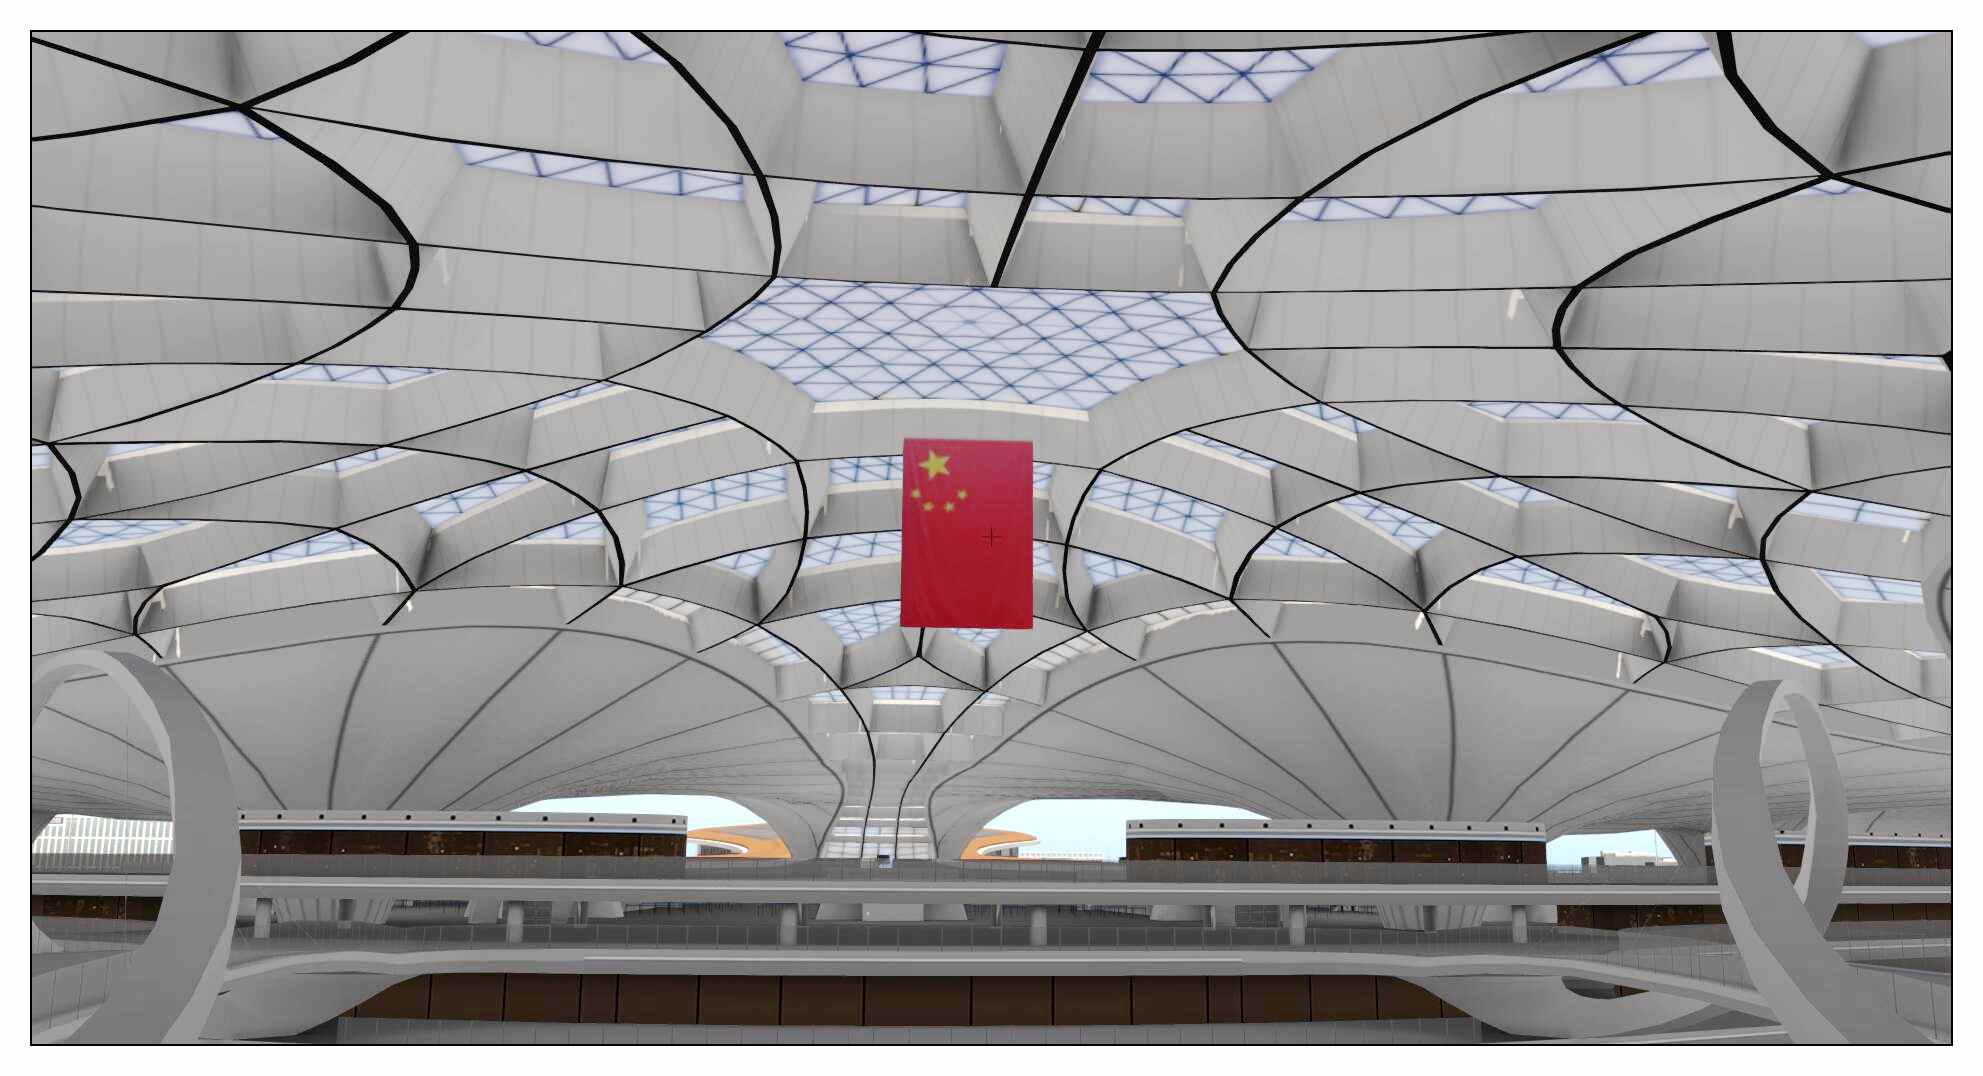 【X-Plane】ZBAD北京大兴国际机场-正式发布-4599 